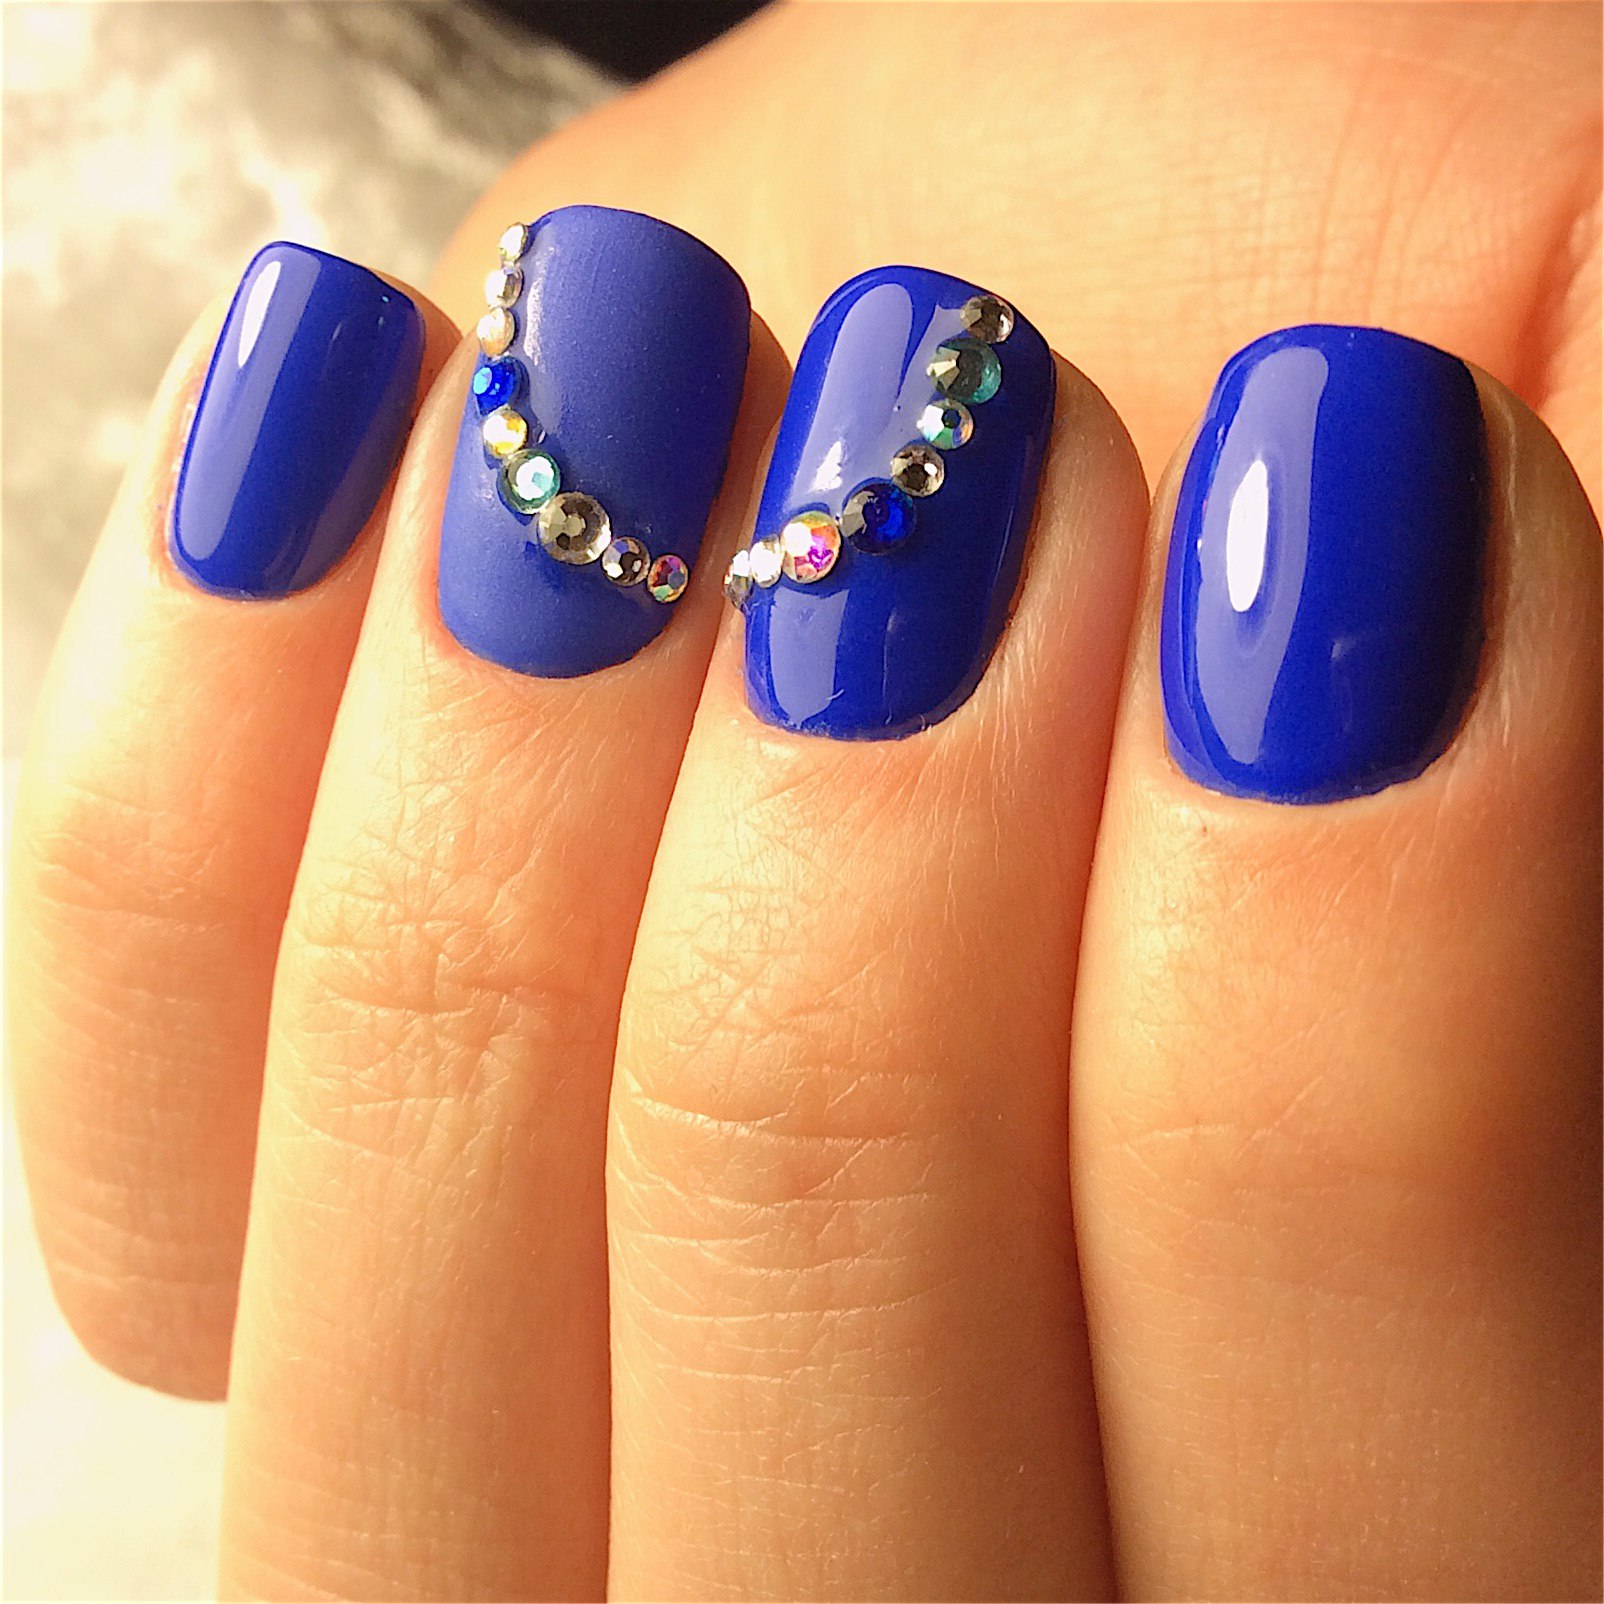 Ногти короткие синий дизайн. Синий маникюр со стразами. Синие ногти. Яркие синие ногти. Синие короткие ногти.